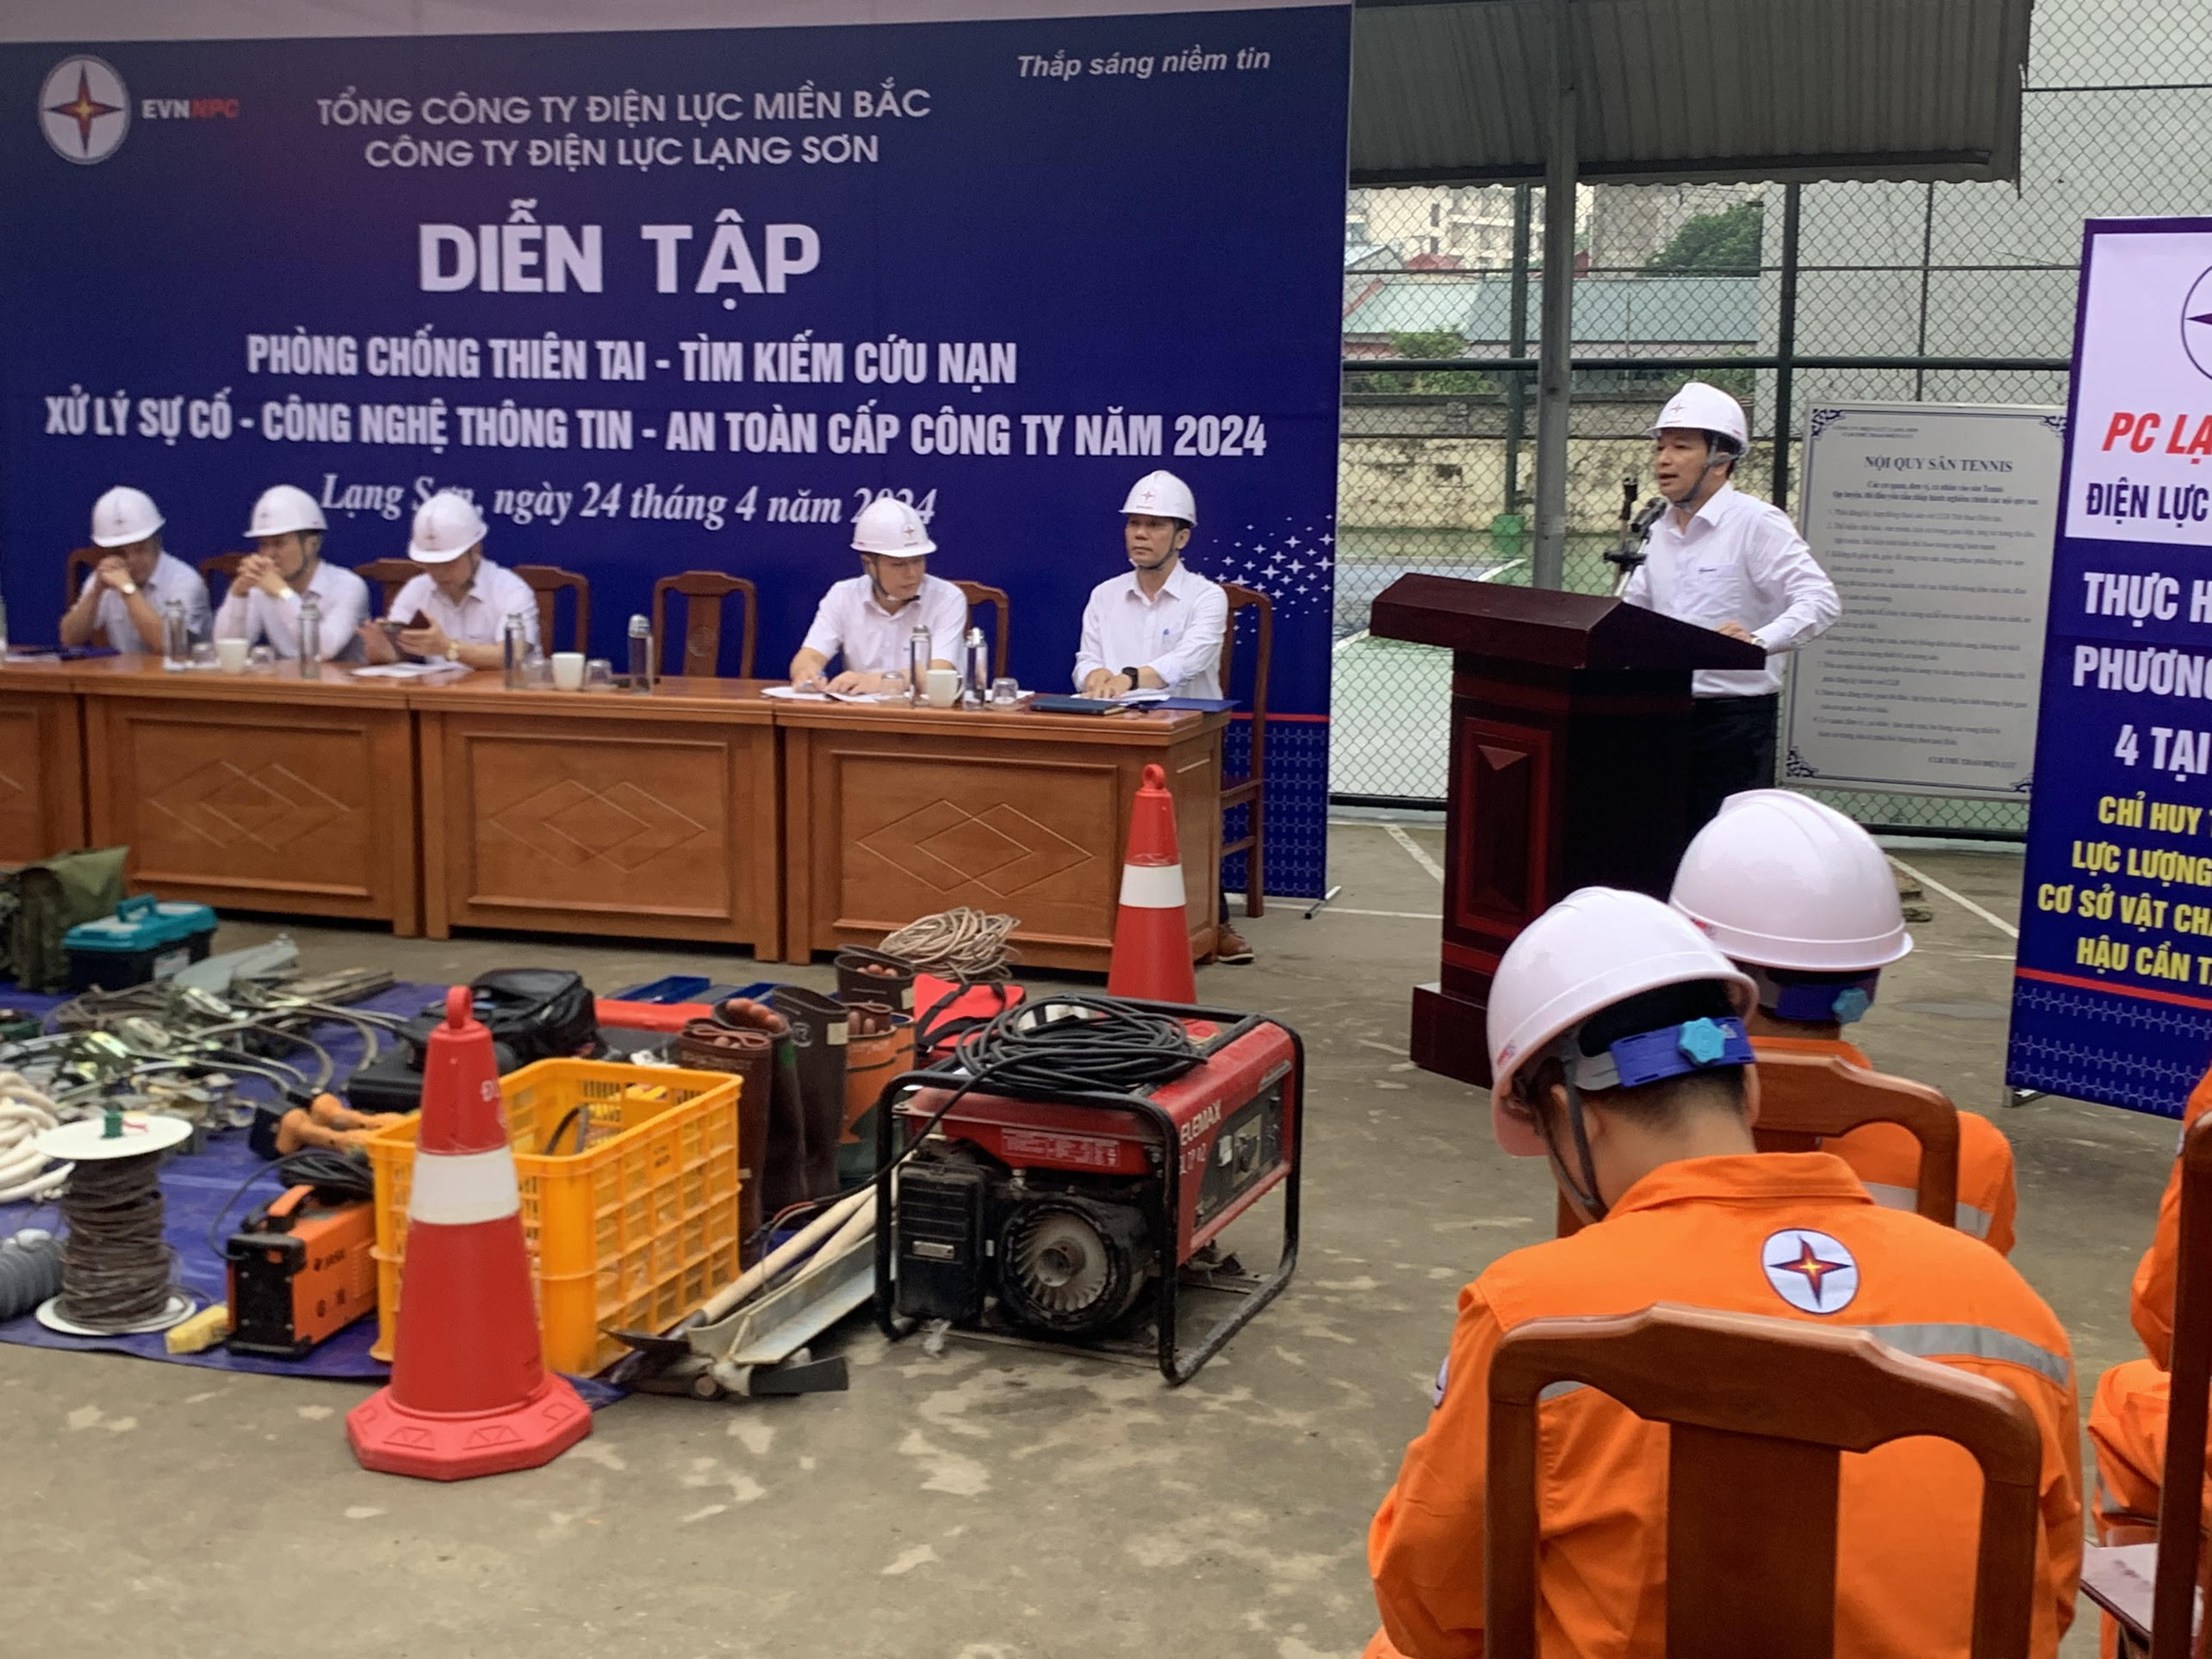  Xí nghiệp Dịch vụ Điện lực Lạng Sơn diễn tập PCTT & TKCN - Xử lý sự cố năm 2024